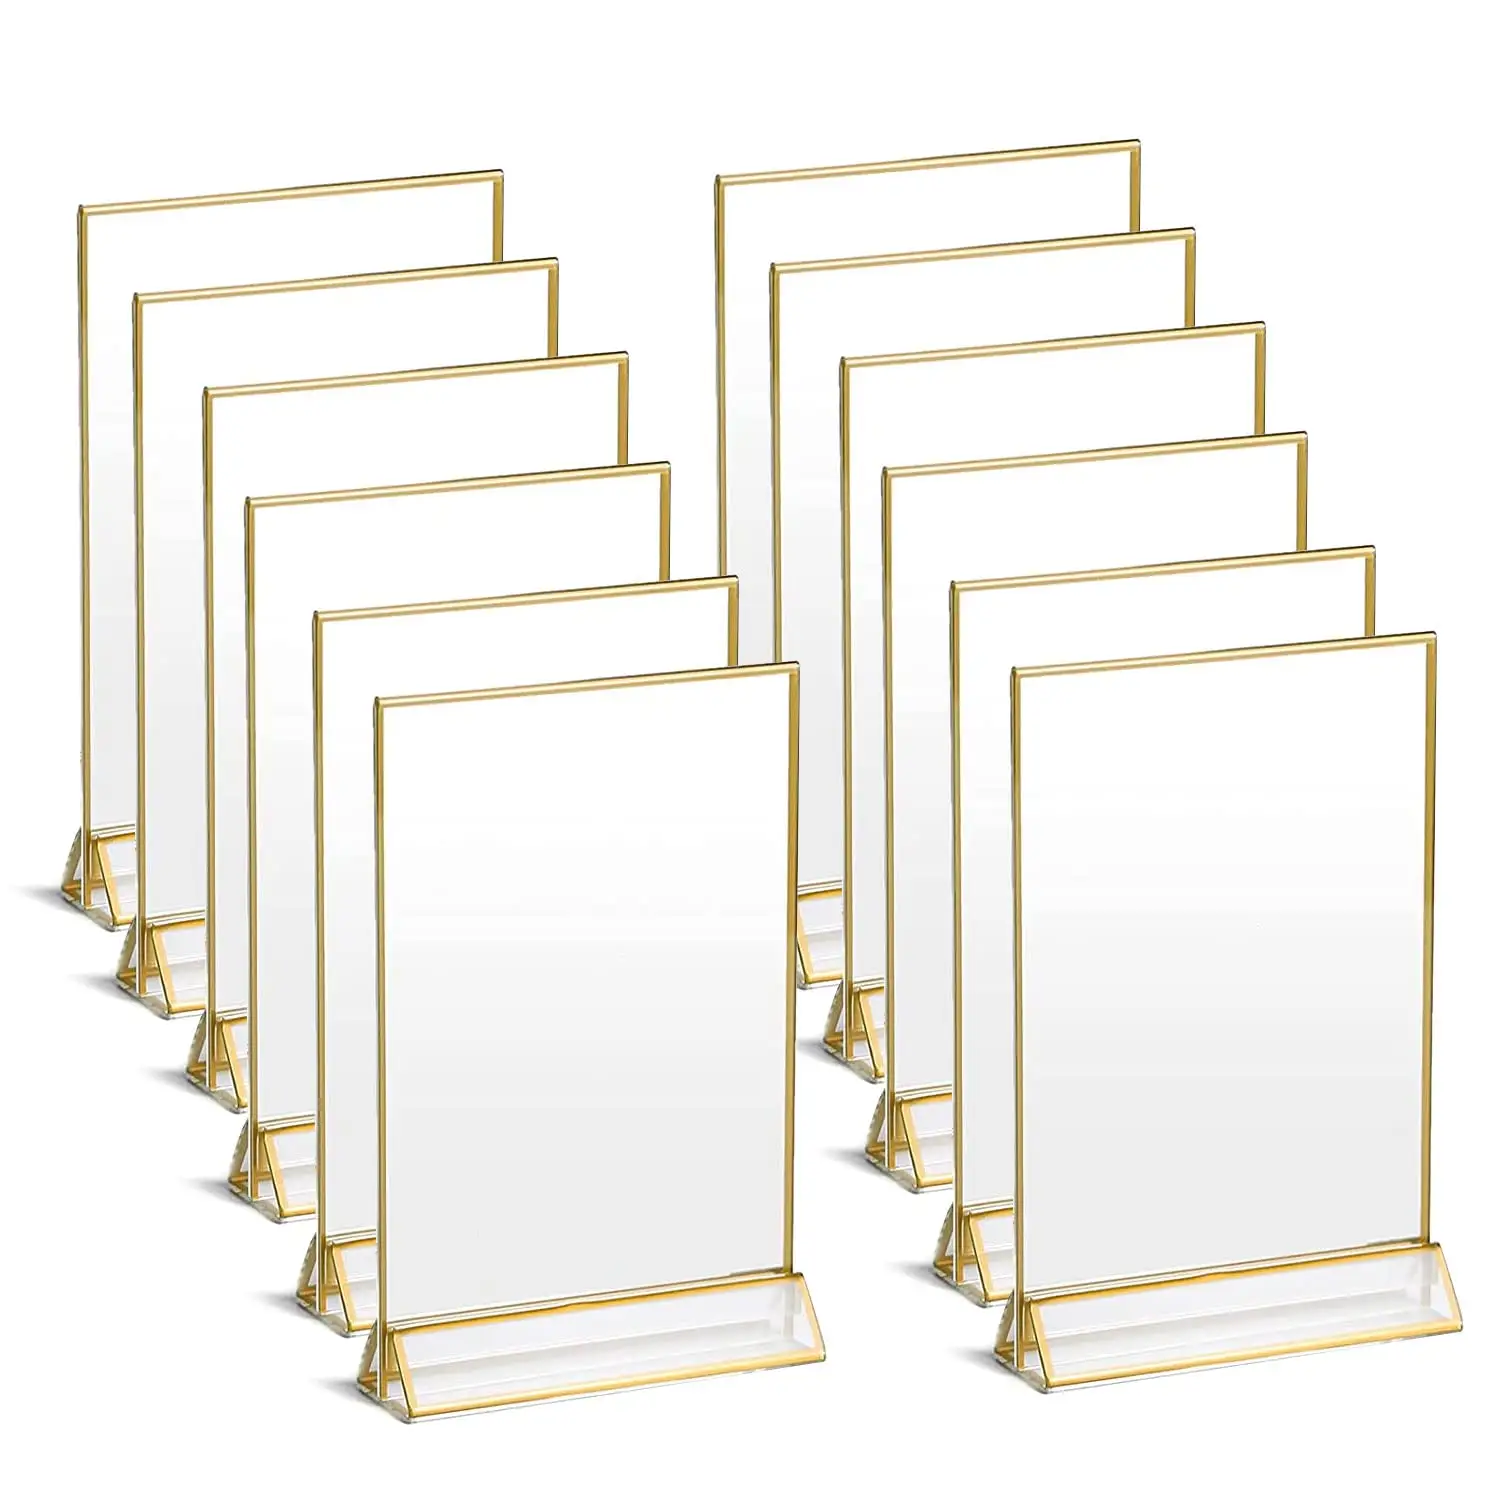 Suporte acrílico dupla face com 6 unidades, para exibição de menu de mesa, números de casamento, com fronteiras de ouro